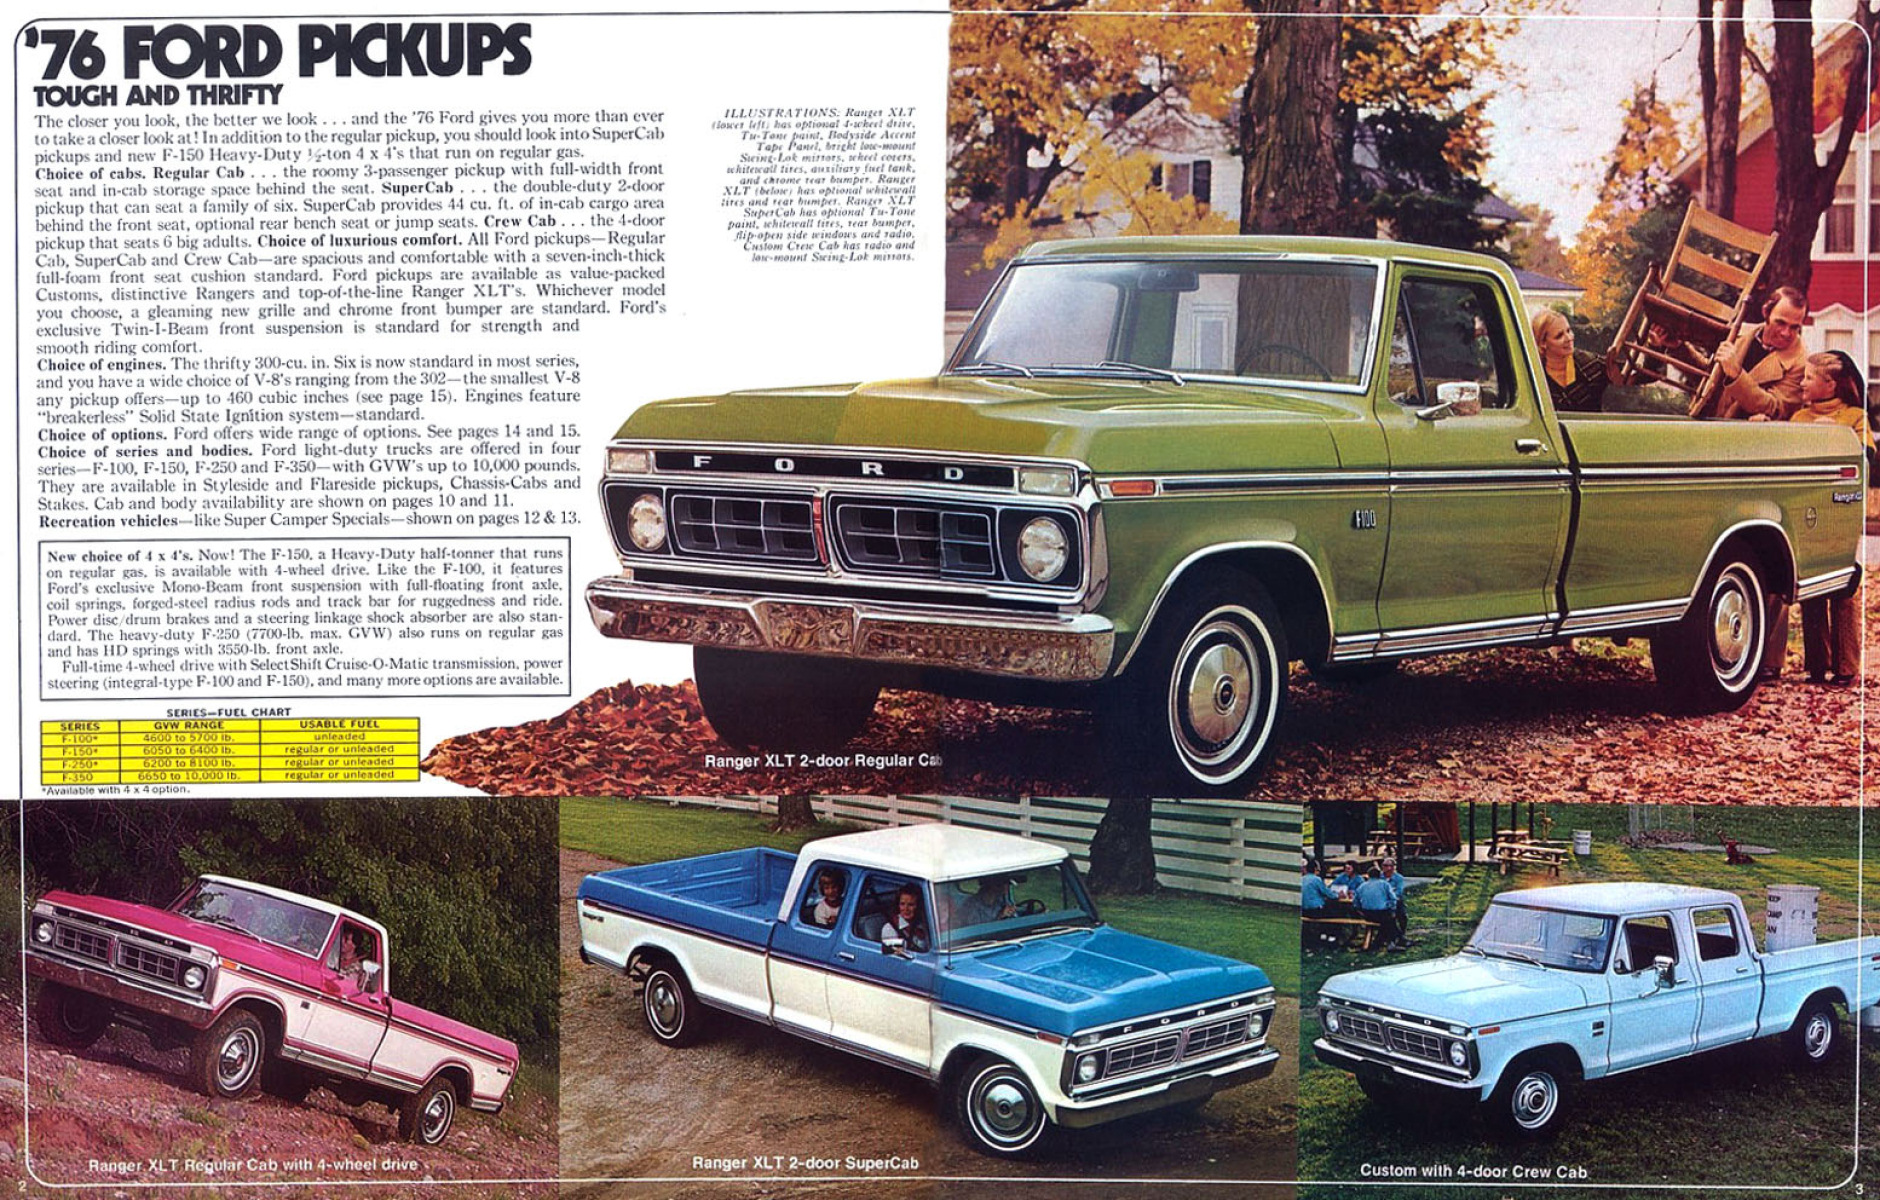 1976_Ford_Pickups_Rev-02-03